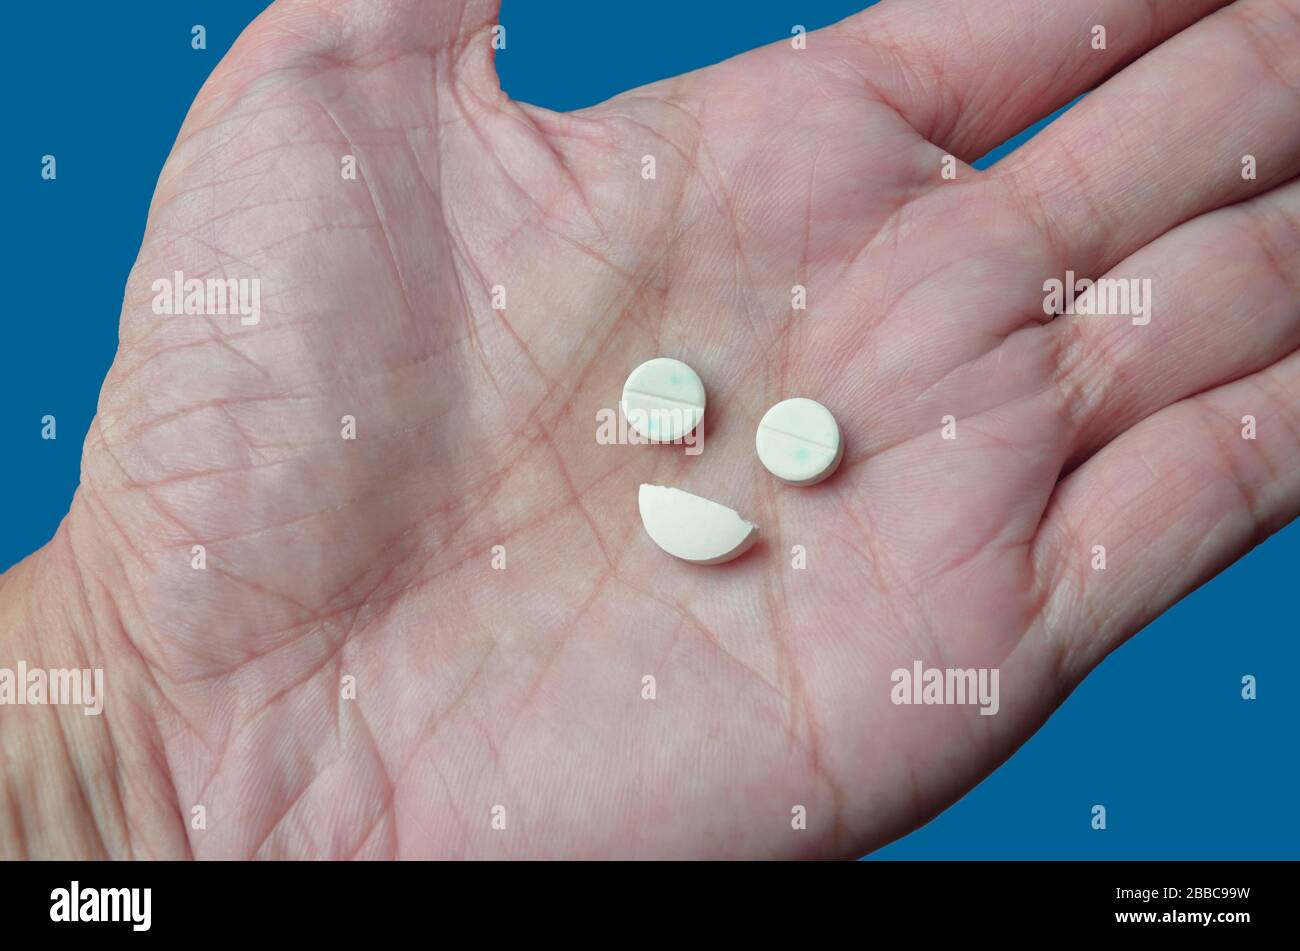 Drogenabhängigkeit, illustriert durch Pillen, die einem glücklichen Gesicht ähneln und je nach Medikament dazu führen, sich gut zu fühlen. Blauer Hintergrund = blaues Gefühl Stockfoto